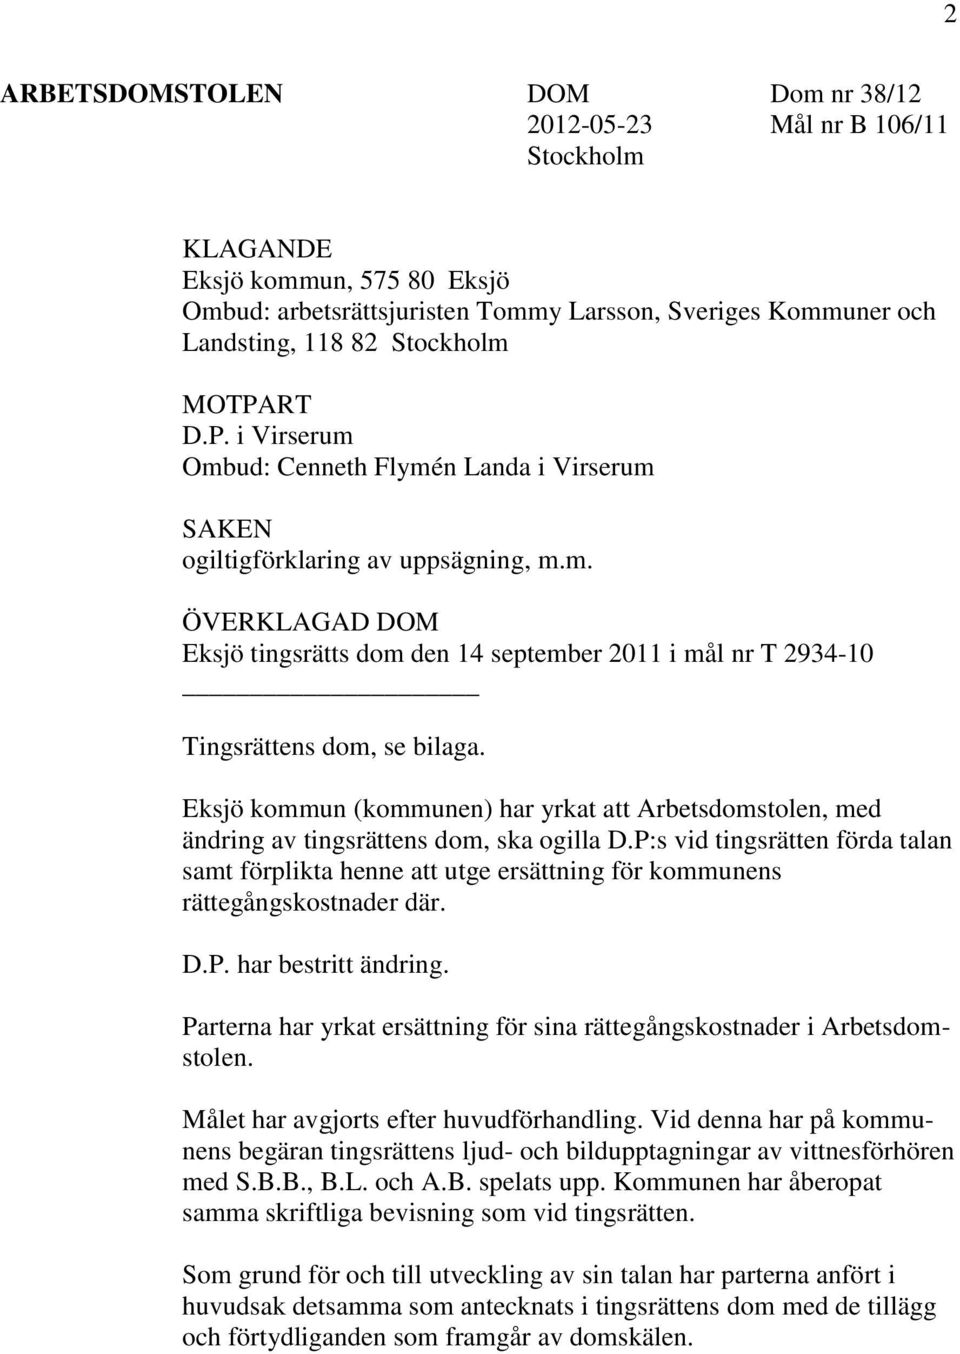 Eksjö kommun (kommunen) har yrkat att Arbetsdomstolen, med ändring av tingsrättens dom, ska ogilla D.